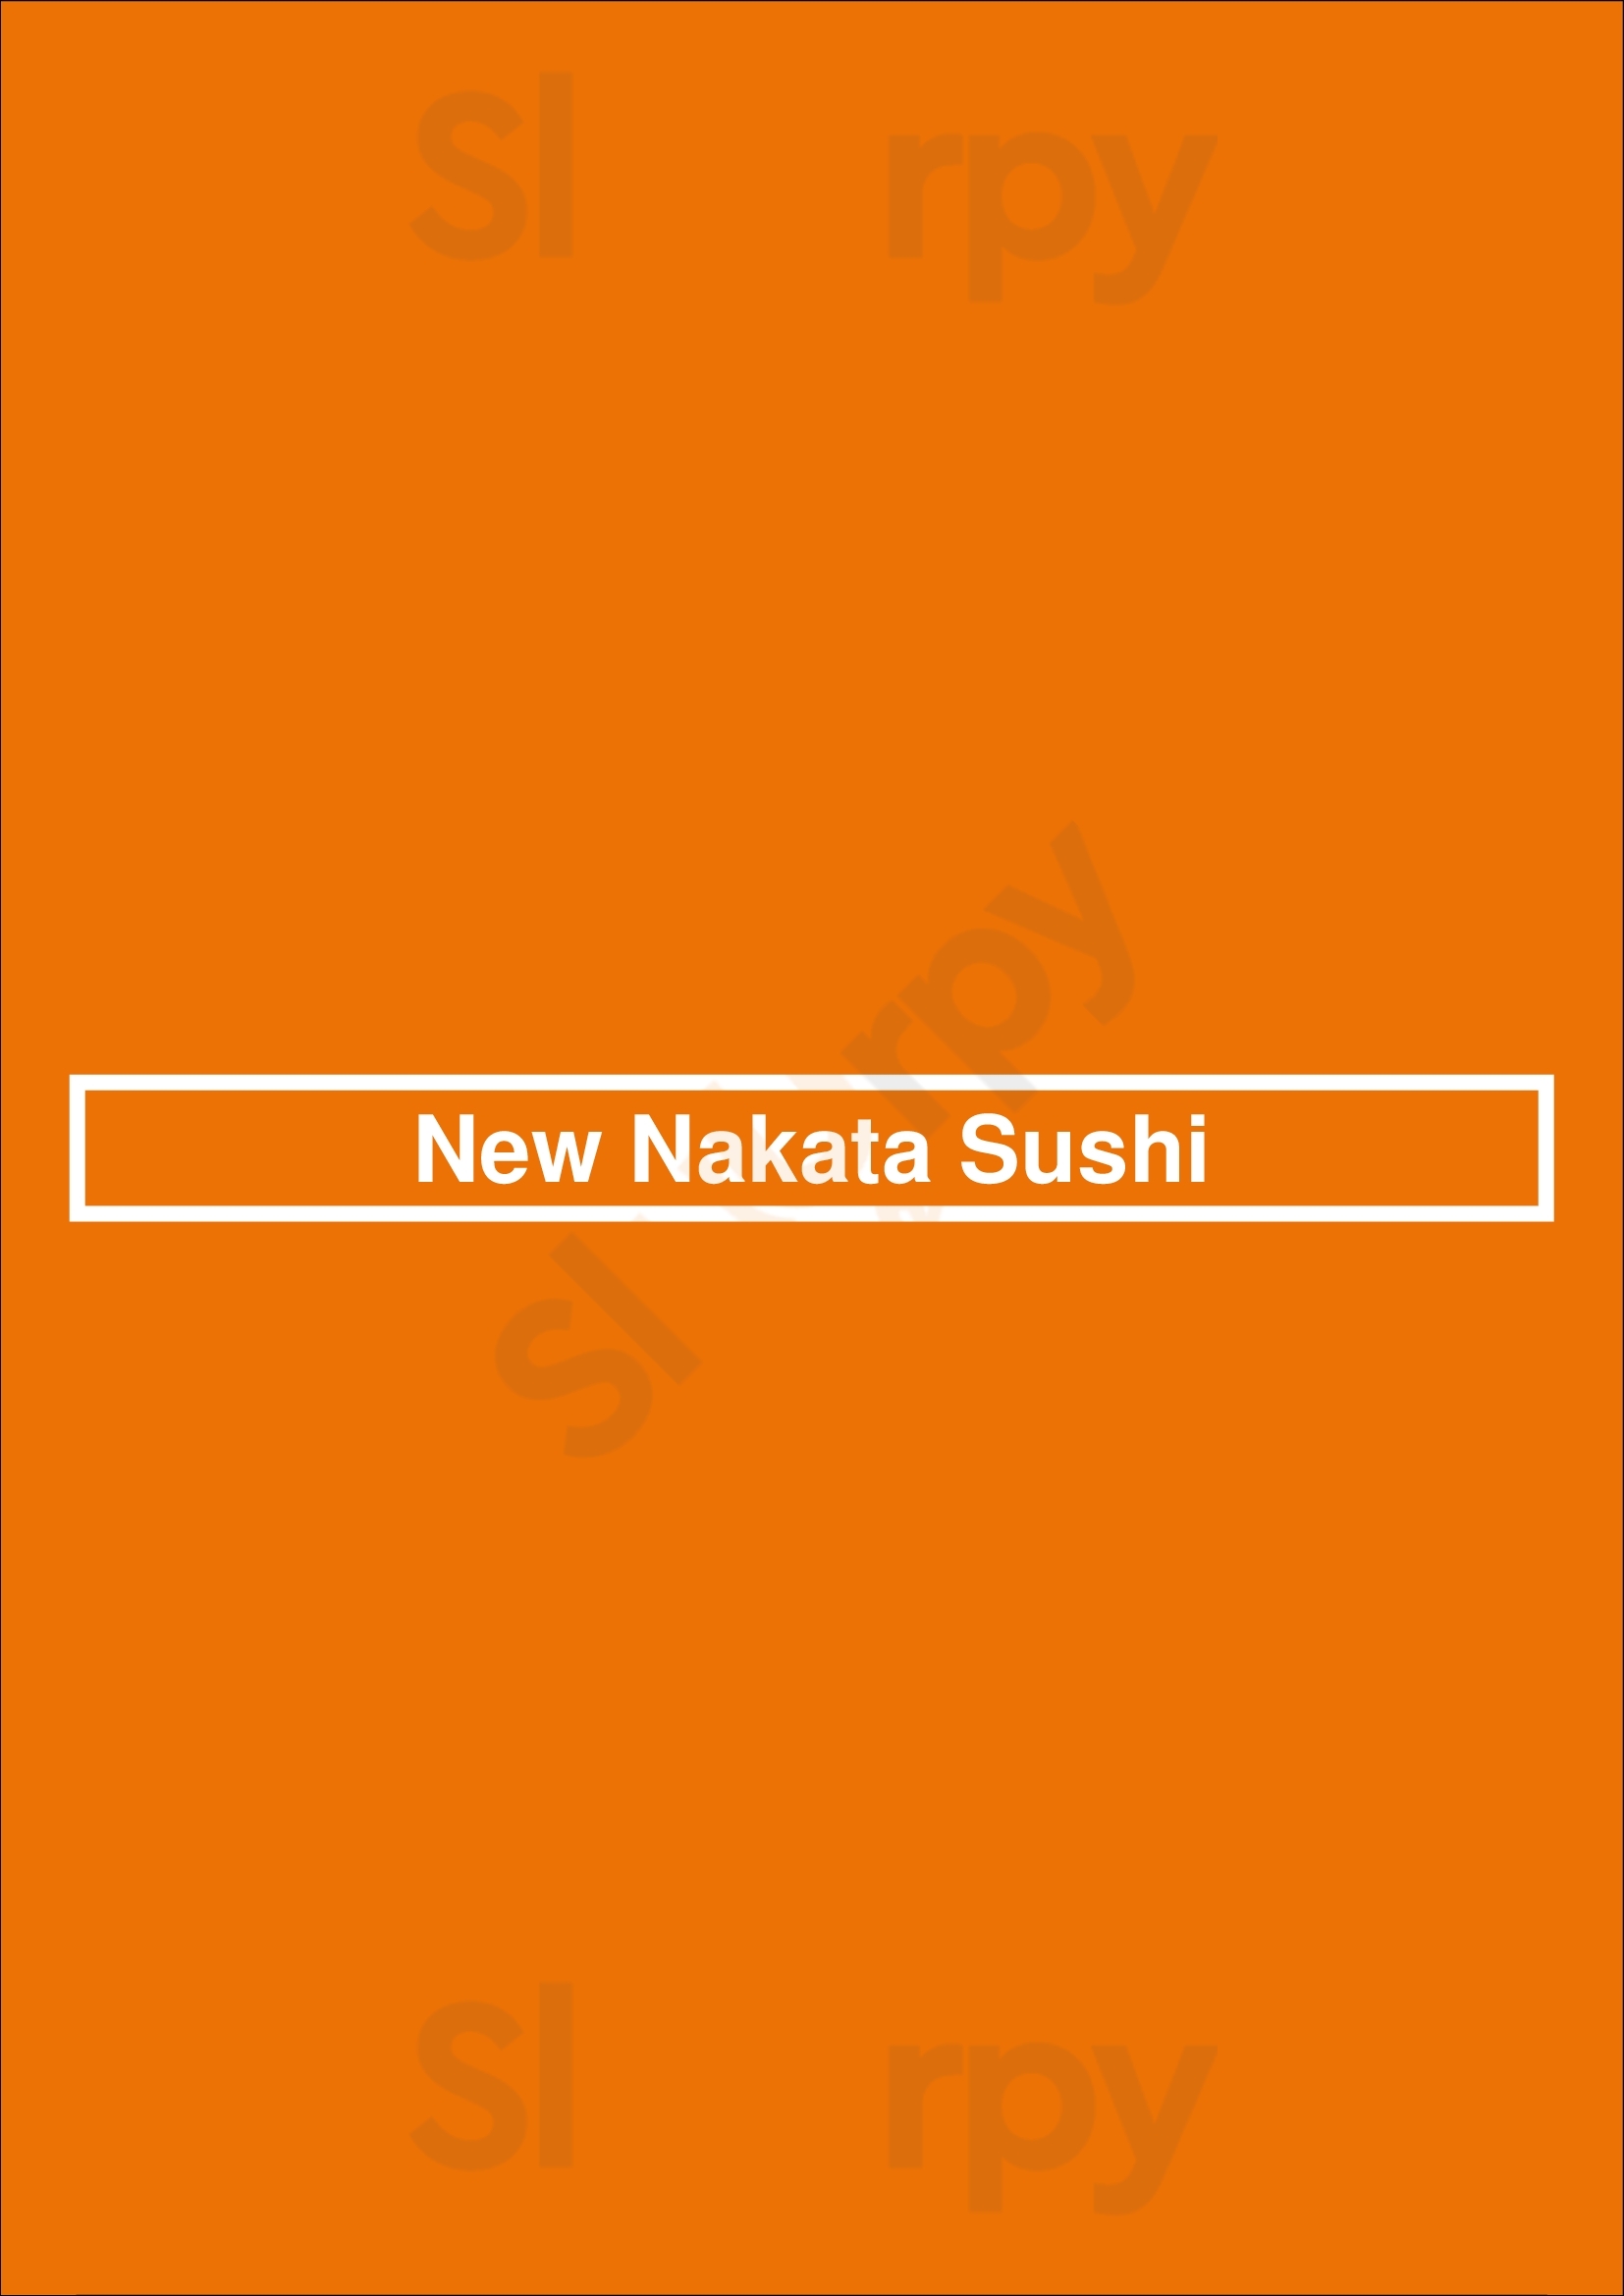 New Nakata Sushi Staten Island Menu - 1